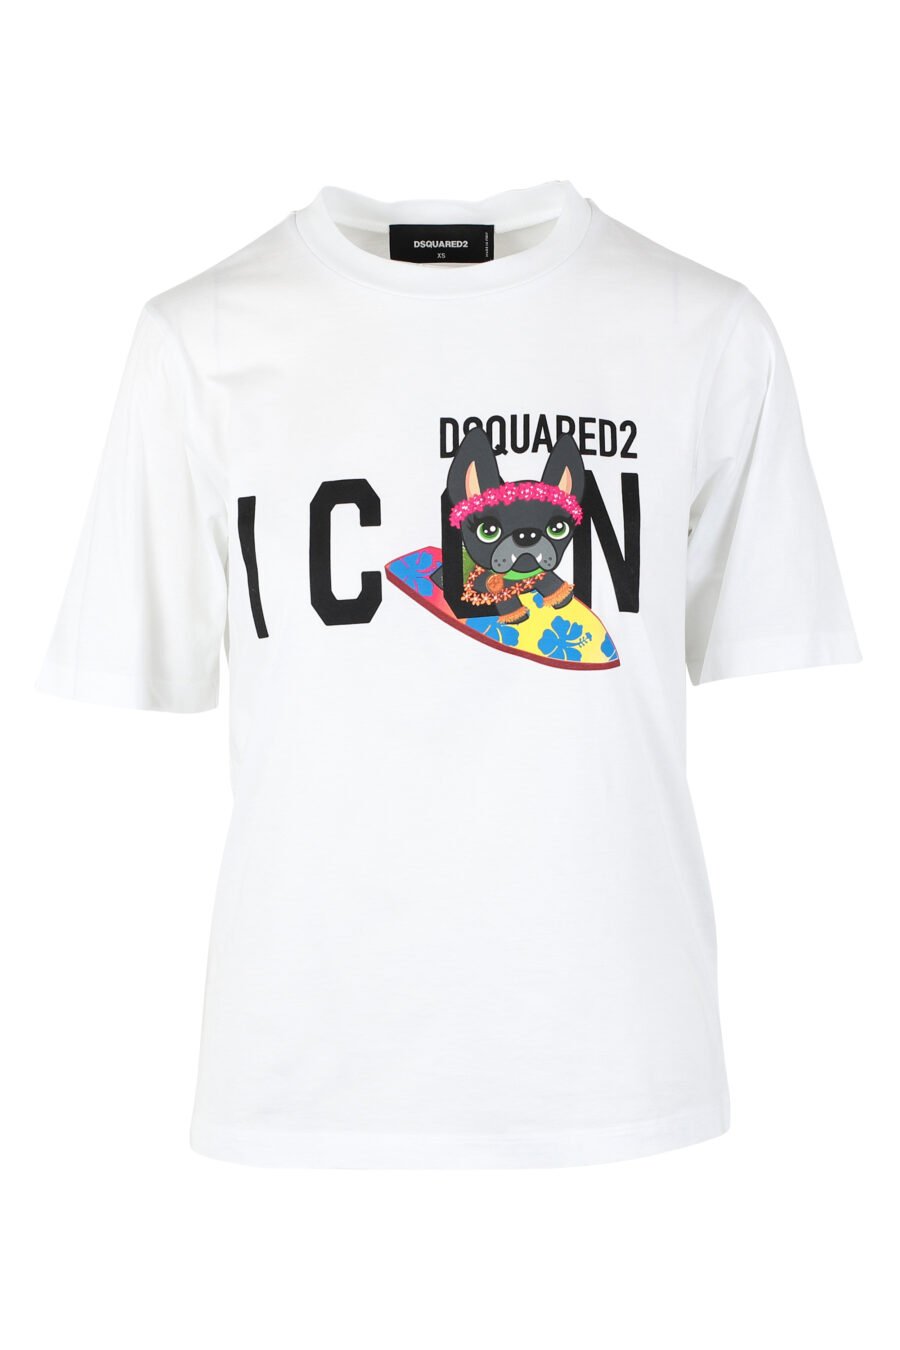 Camiseta blanca con logo "icon" y perro surfer - IMG 9787